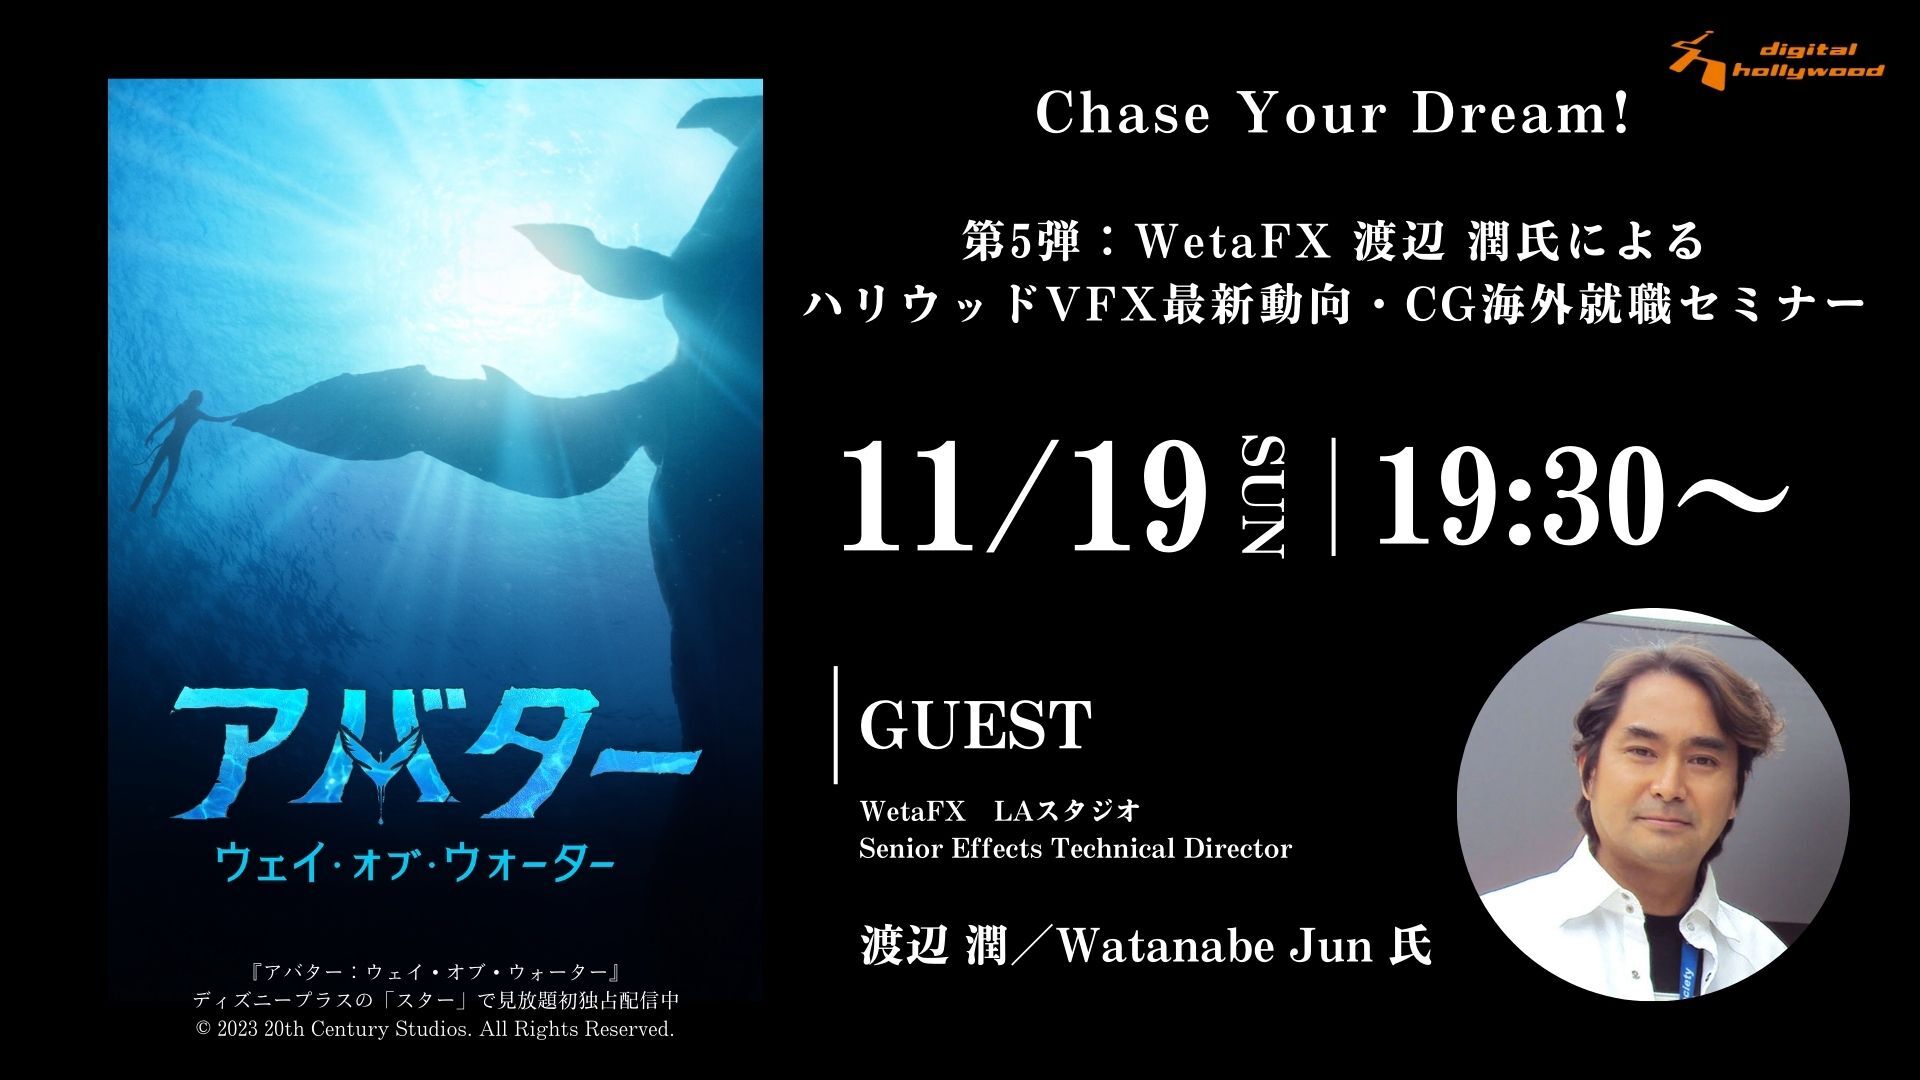 Chase Your Dream!　第5弾：WetaFX 渡辺 潤氏によるハリウッドVFX最新動向・CG海外就職セミナー